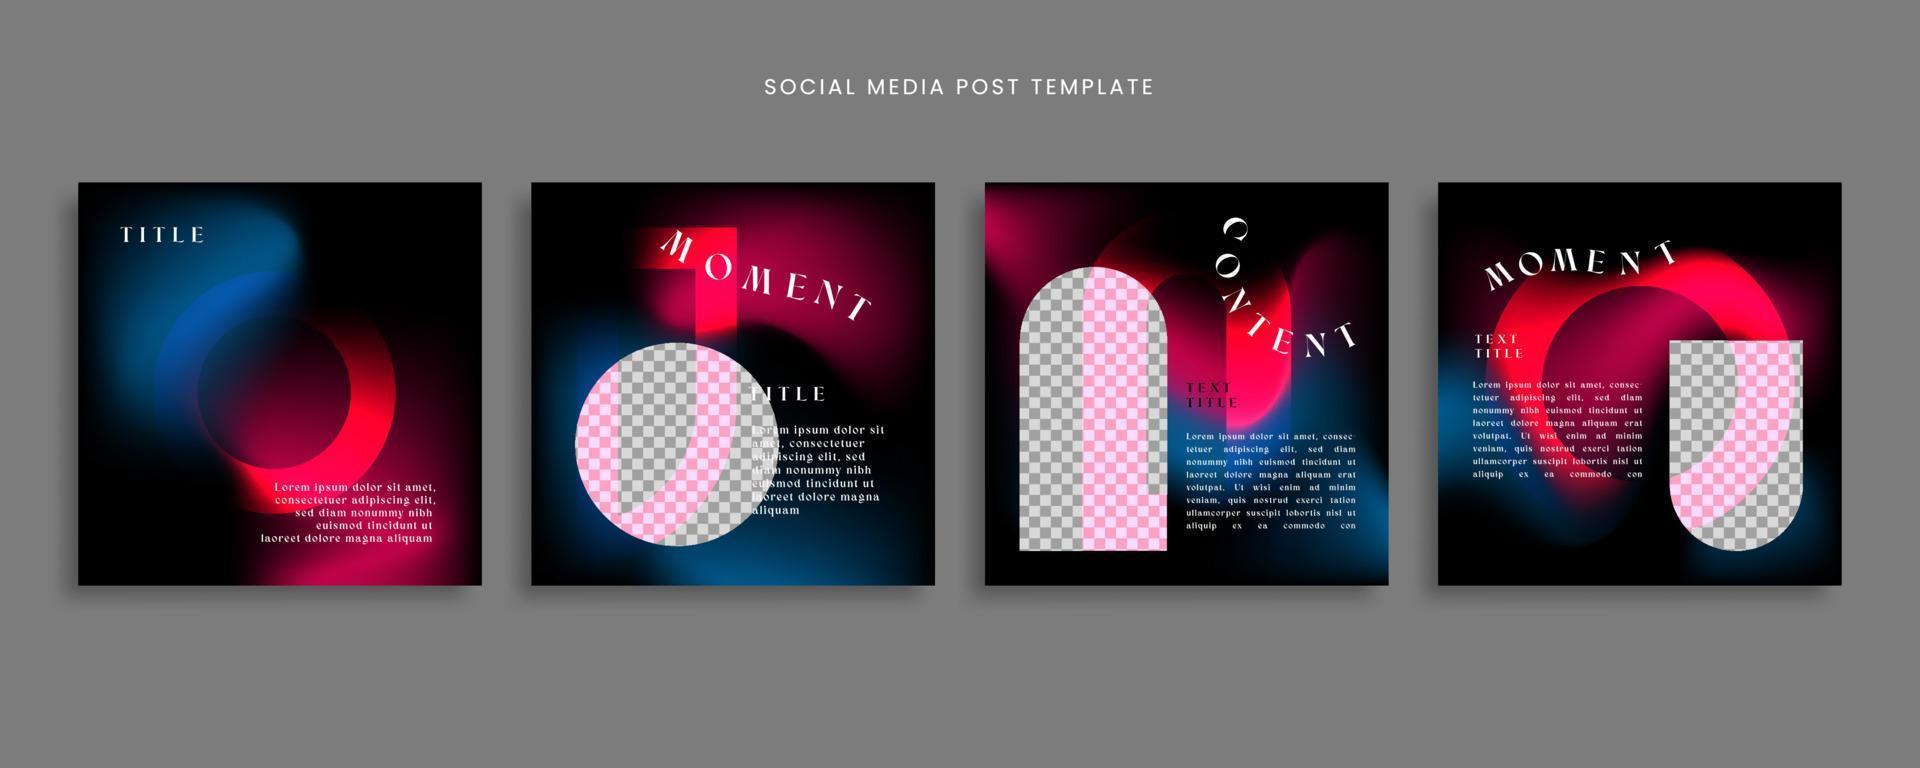 inläggsmall för sociala medier med gradient abstrakt stil för innehållsdelning, etc vektor